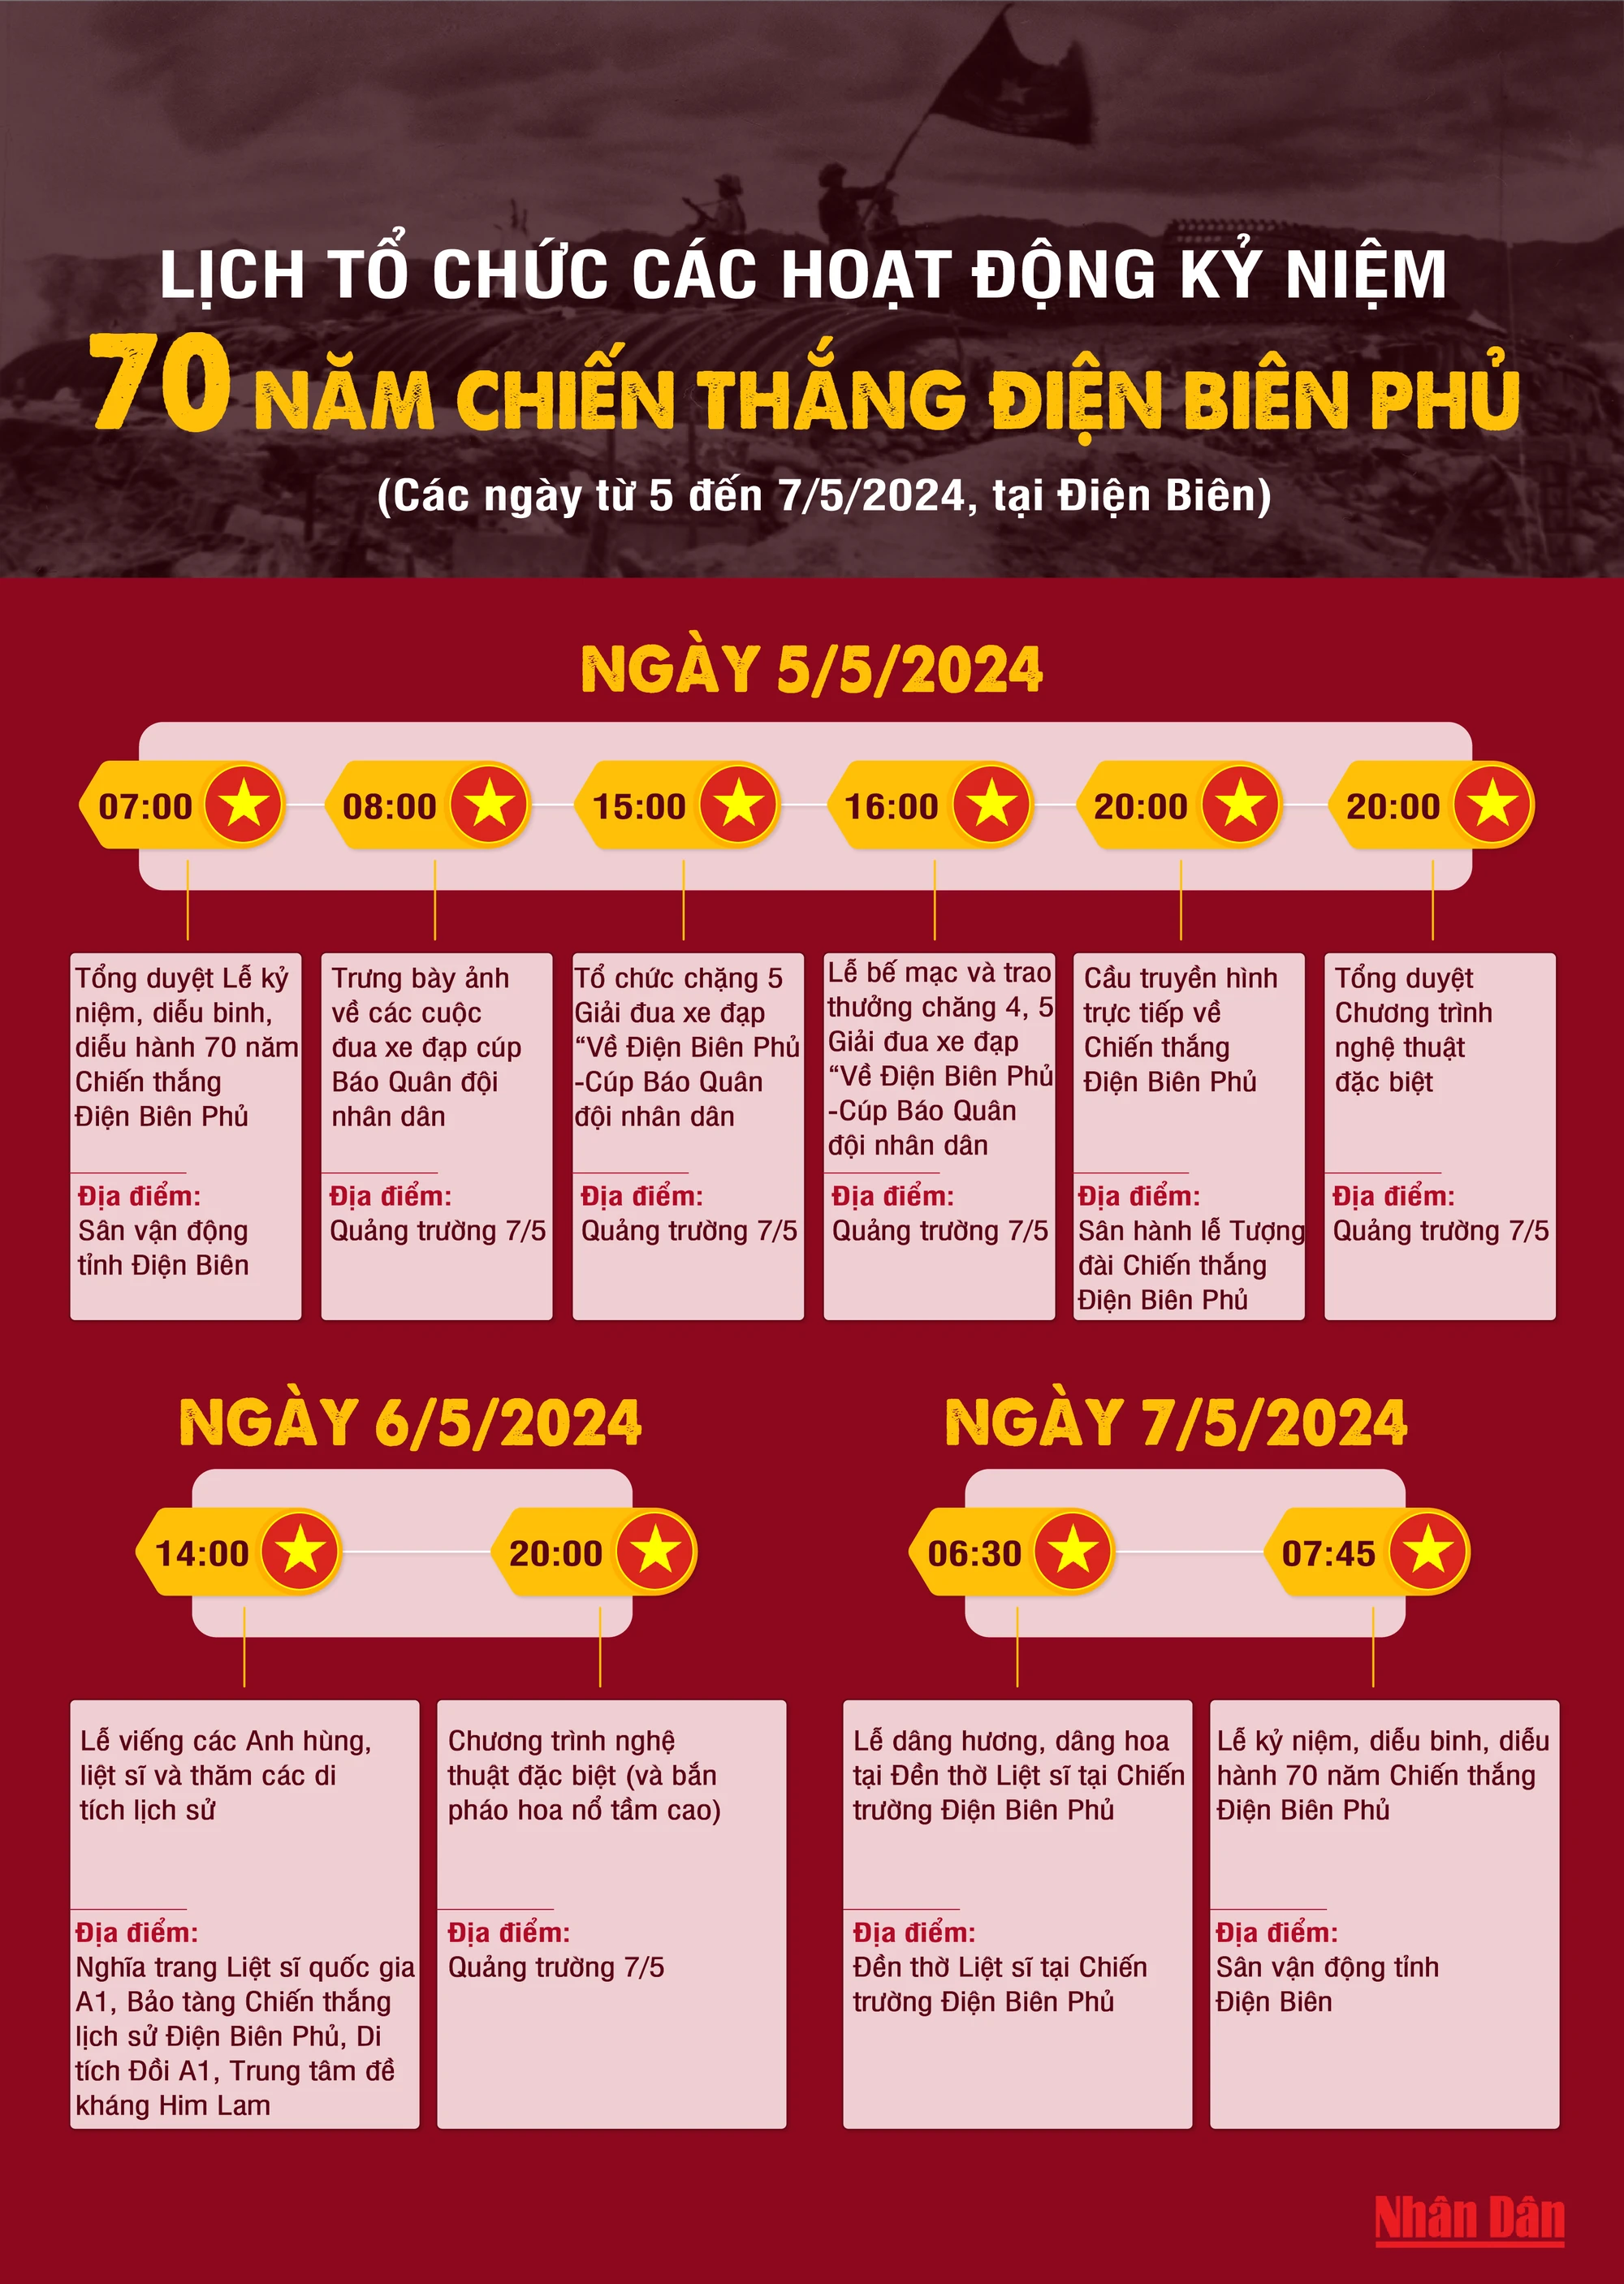 [Infographic] Lịch tổ chức các hoạt động kỷ niệm 70 năm Chiến thắng Điện Biên Phủ ảnh 1